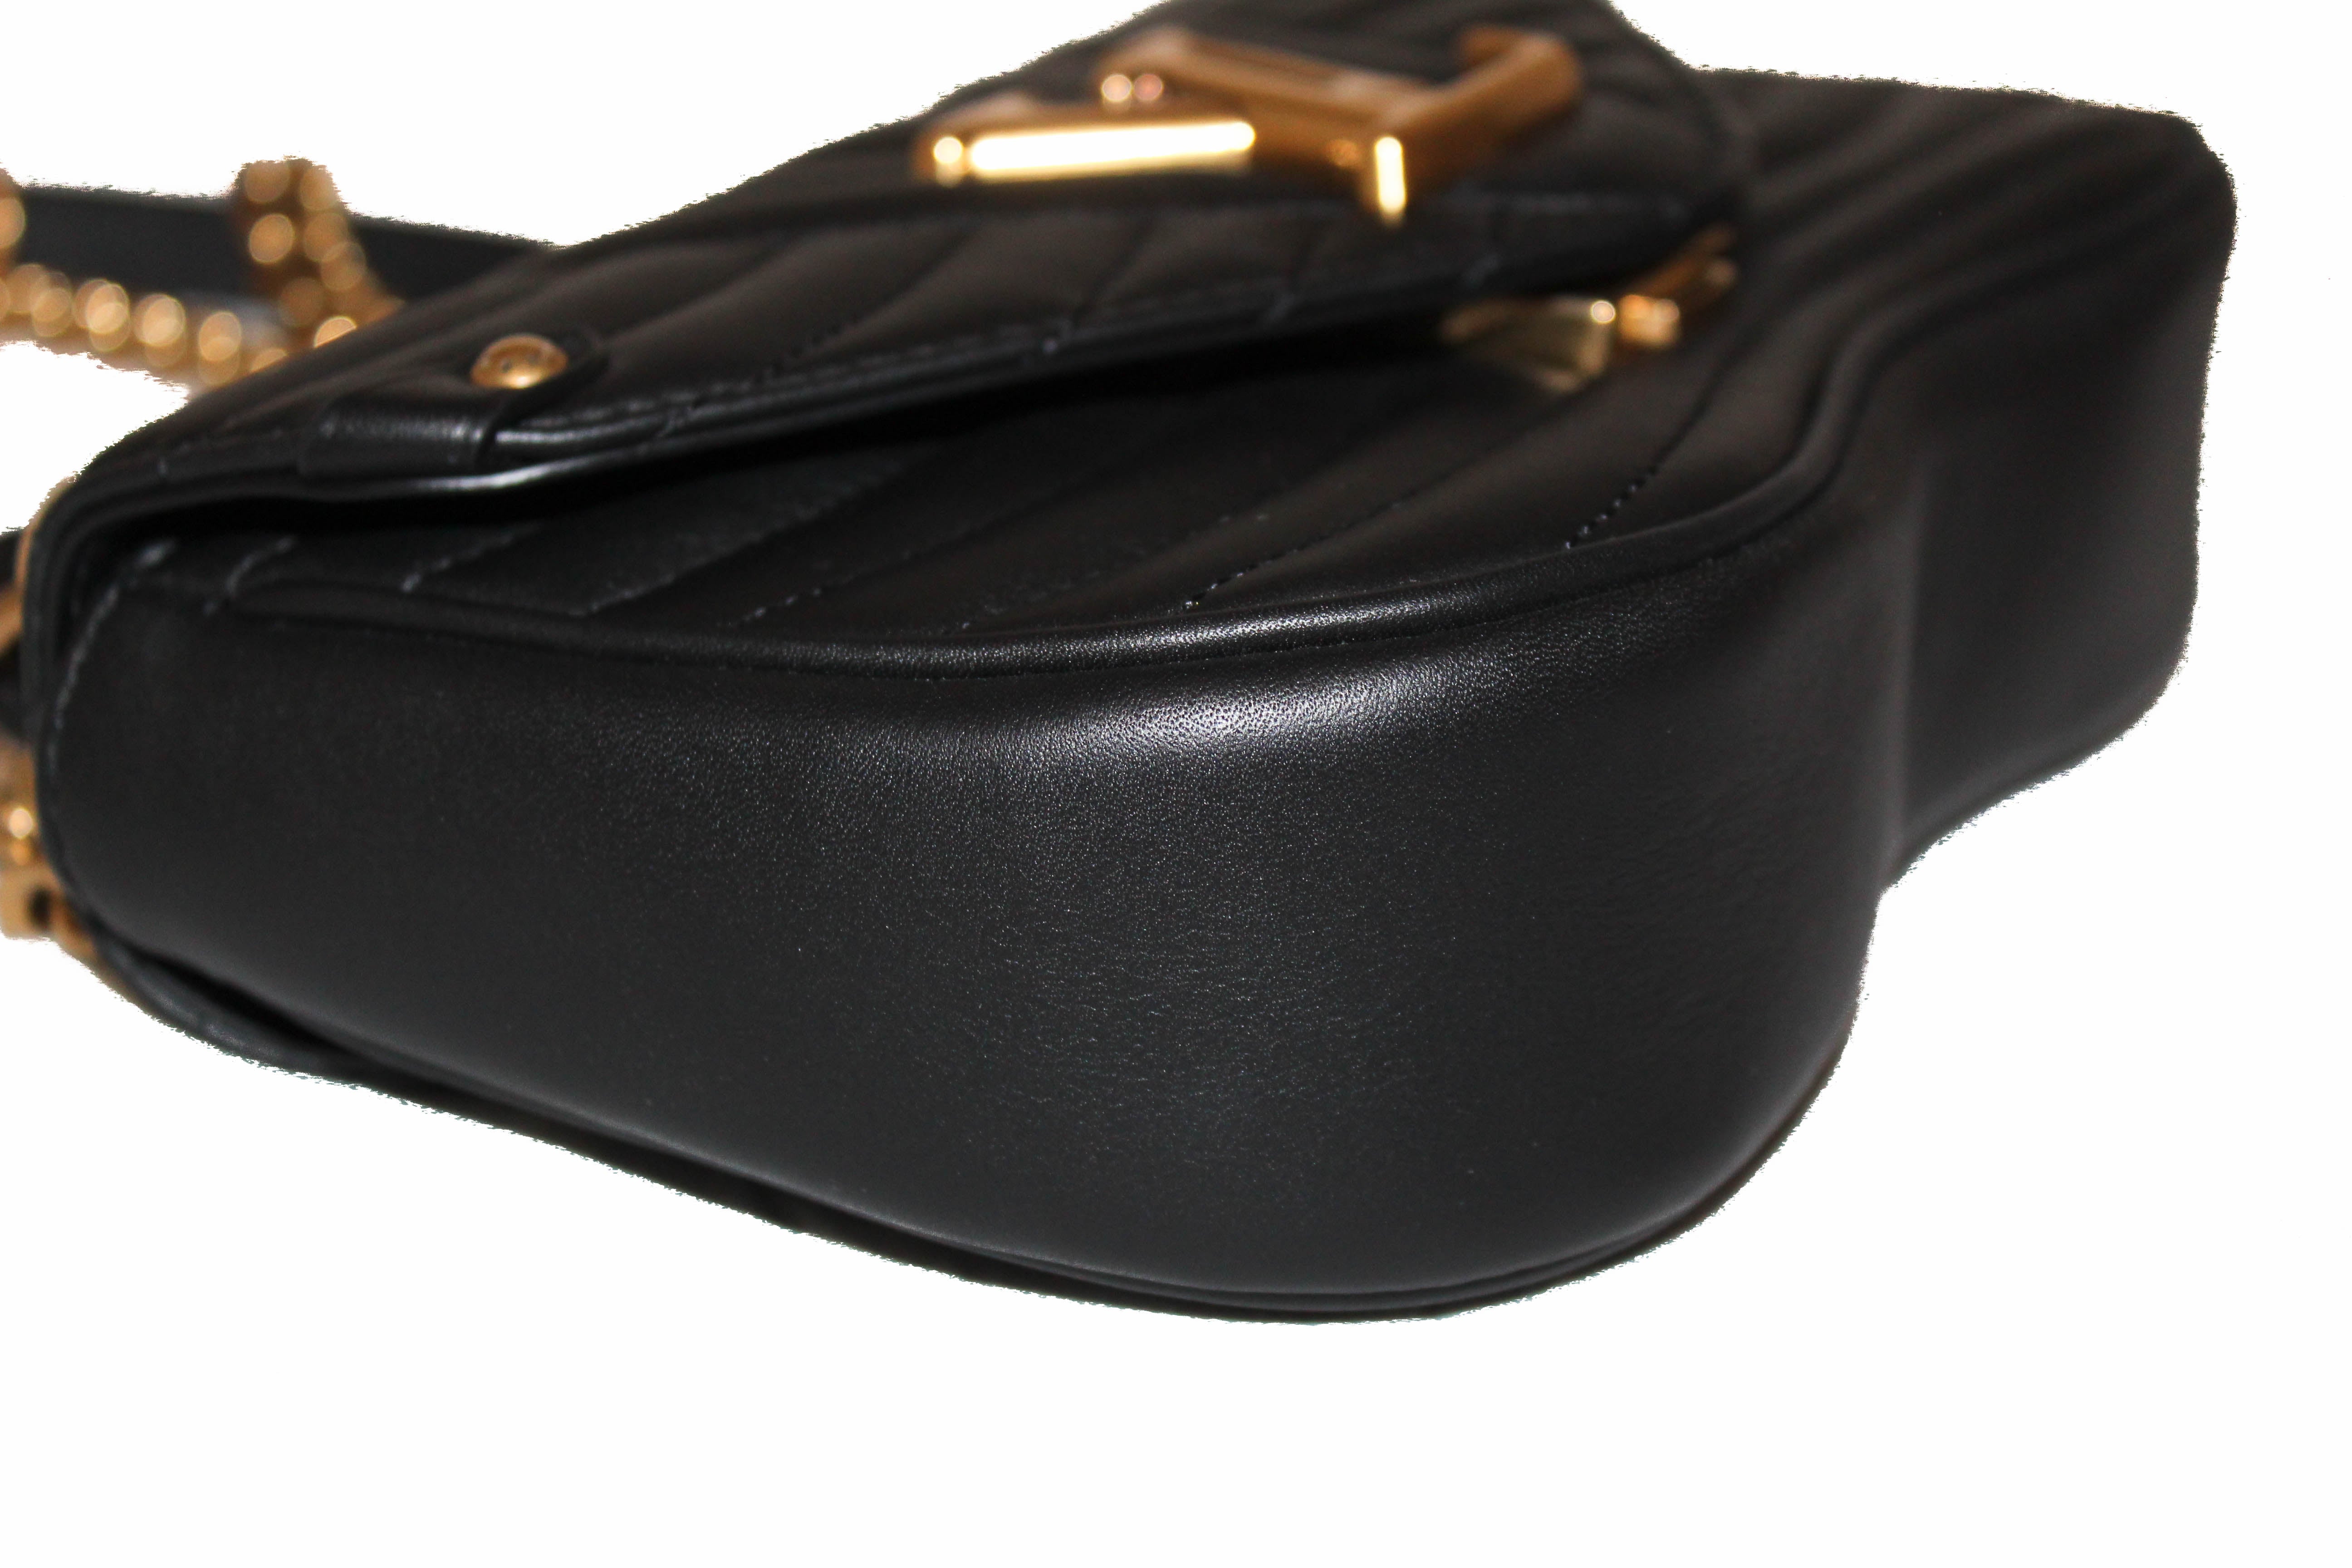 Authentic Louis Vuitton Black New Wave Chain PM Hand/Shoulder/Crossbody Bag